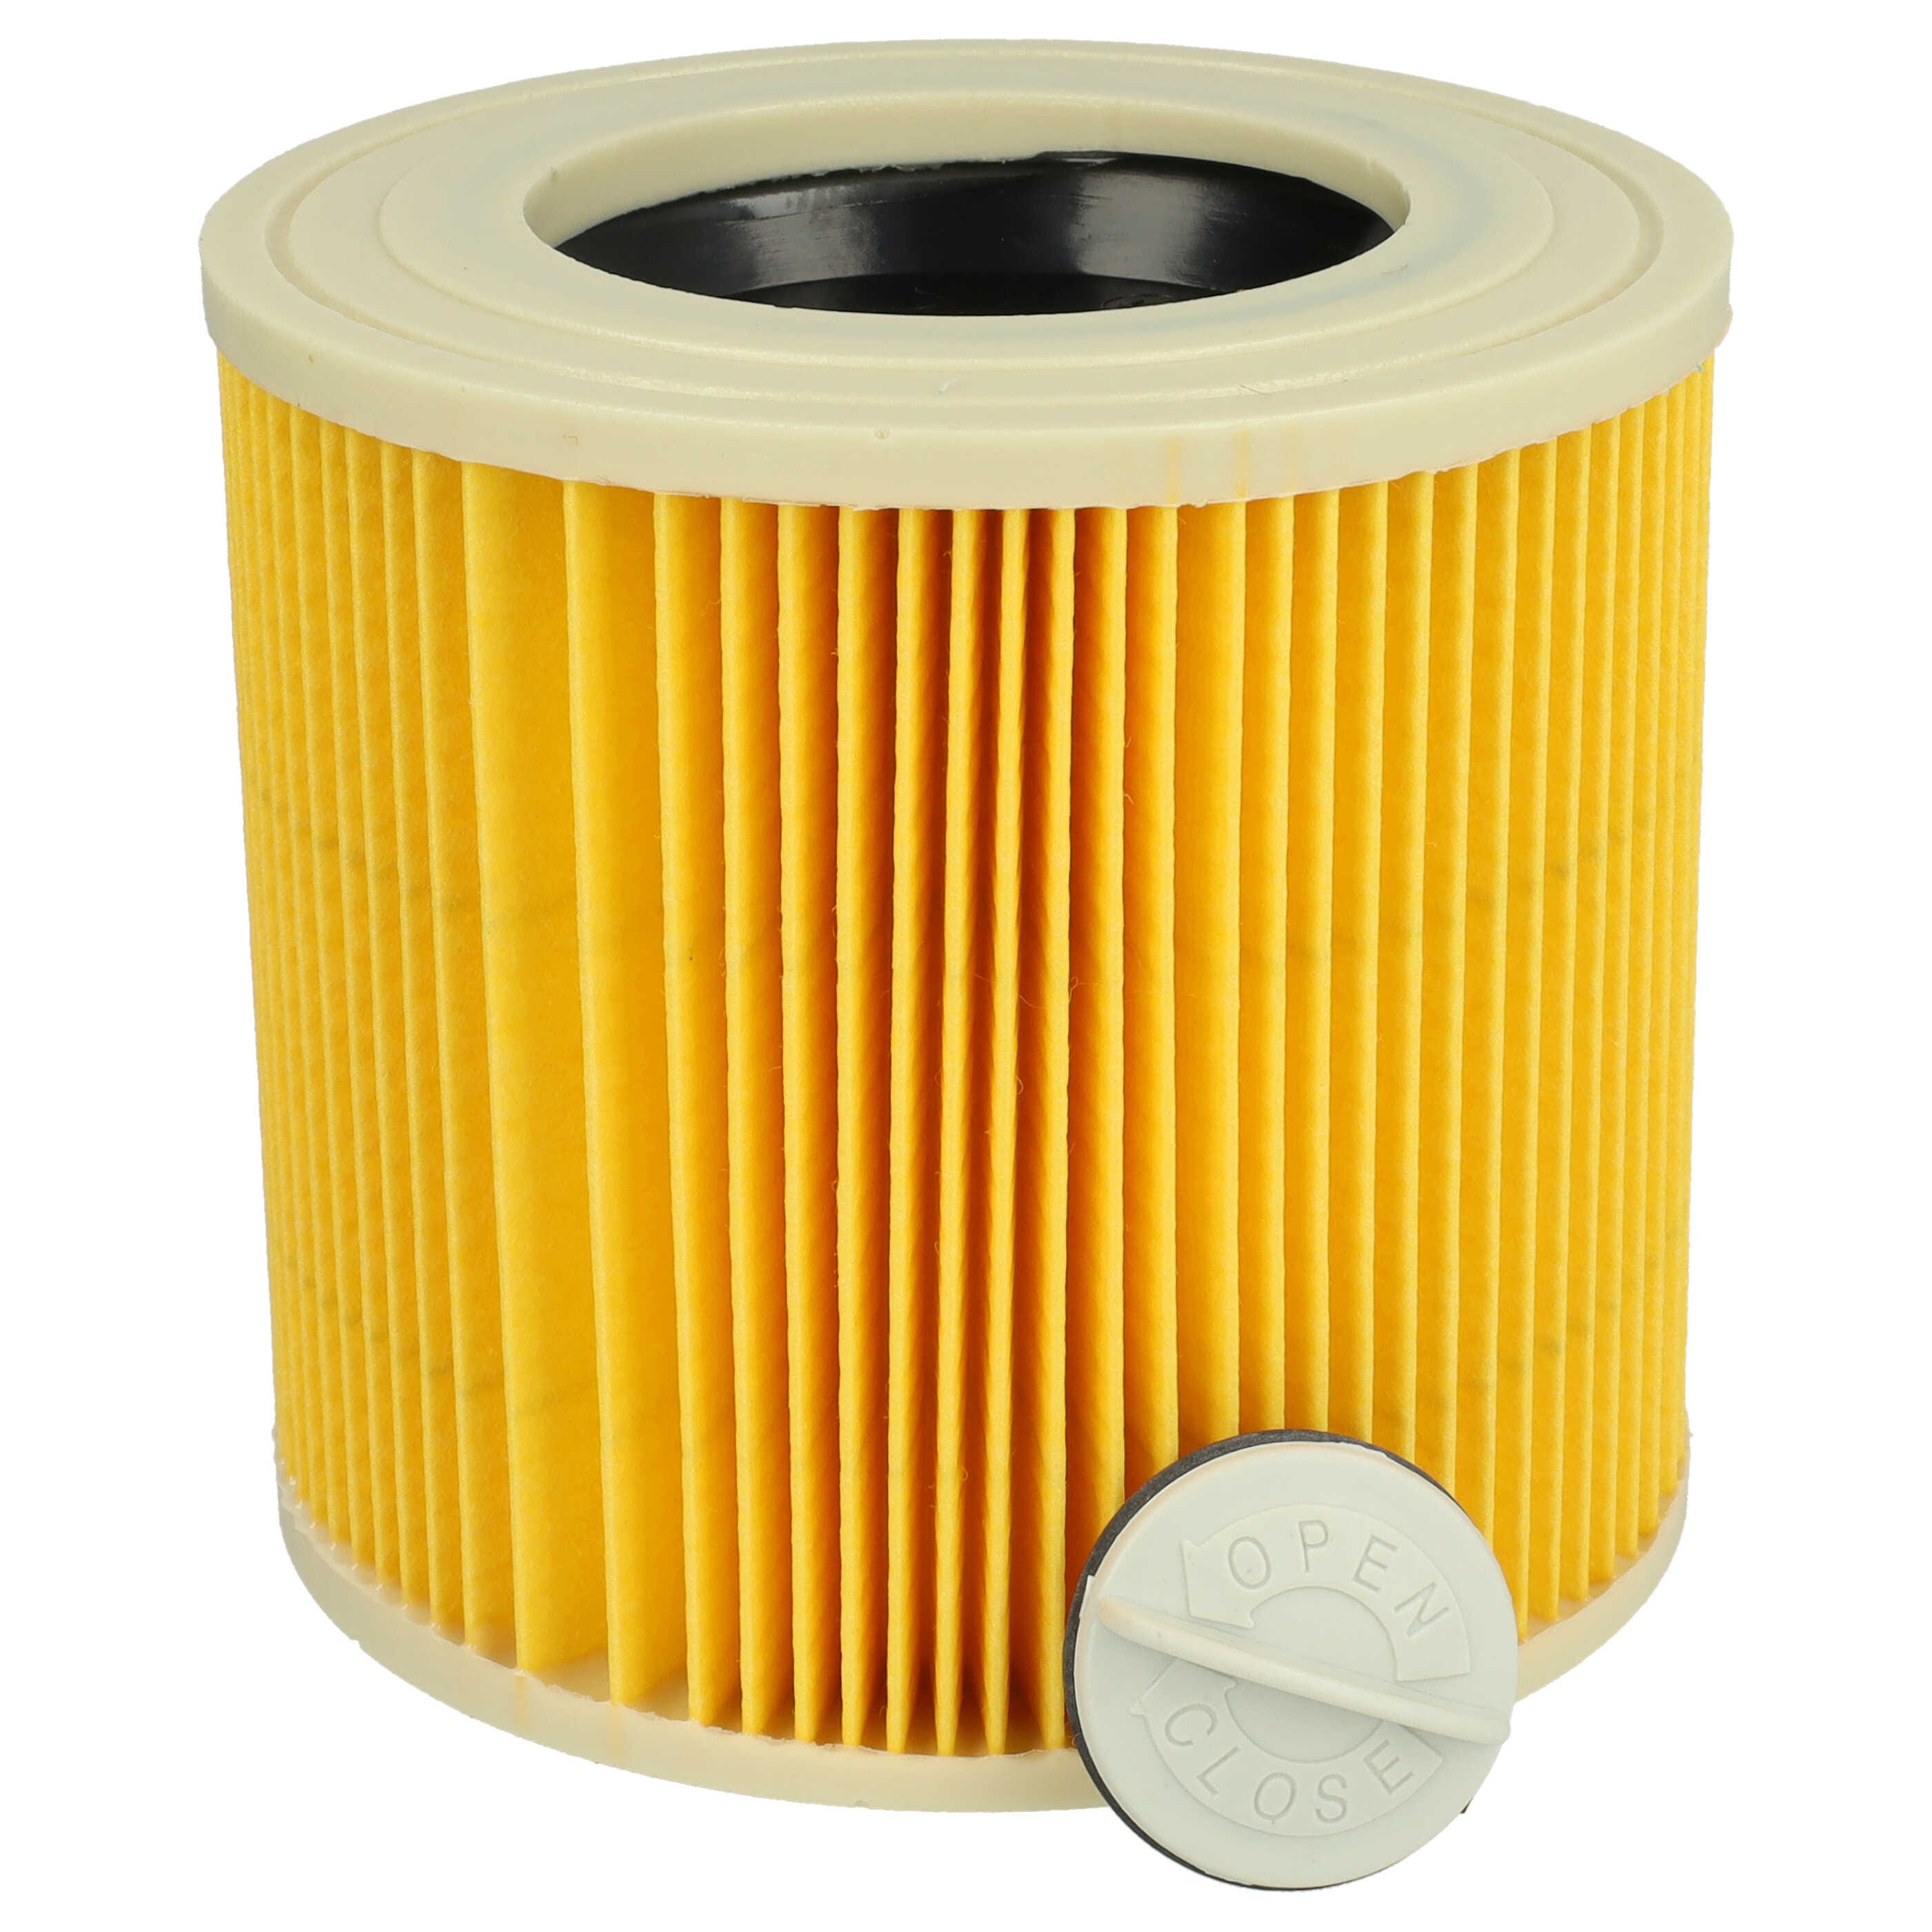 Vhbw Lot de 2x filtres à cartouche compatible avec Kärcher WD 3, WD 3.200,  WD 2500 M aspirateur à sec ou humide - Filtre plissé, jaune